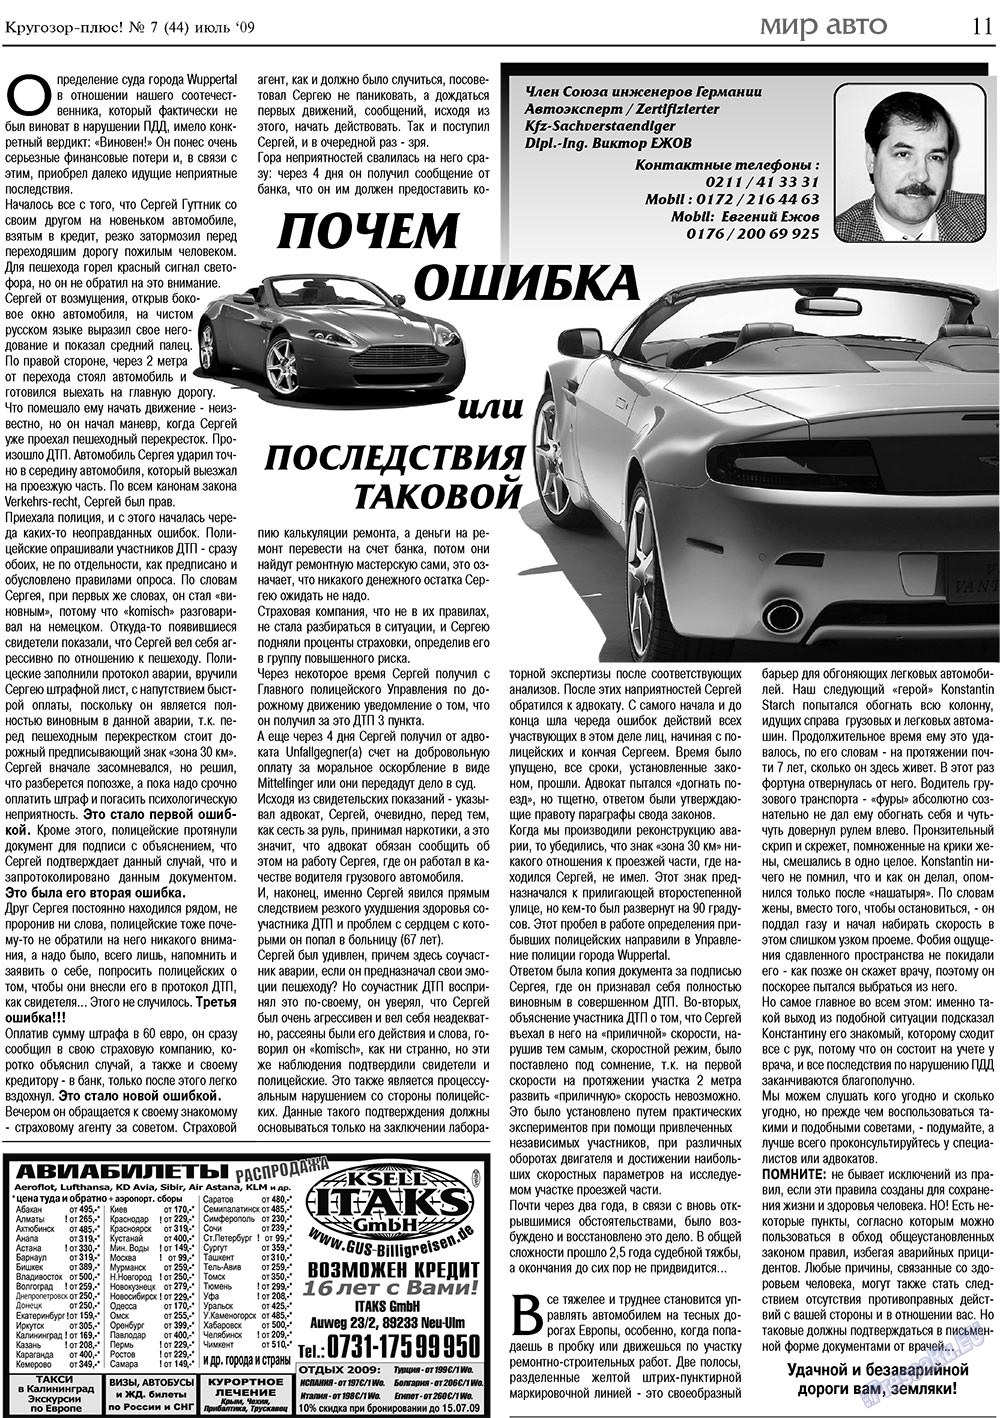 Кругозор плюс!, газета. 2009 №7 стр.11